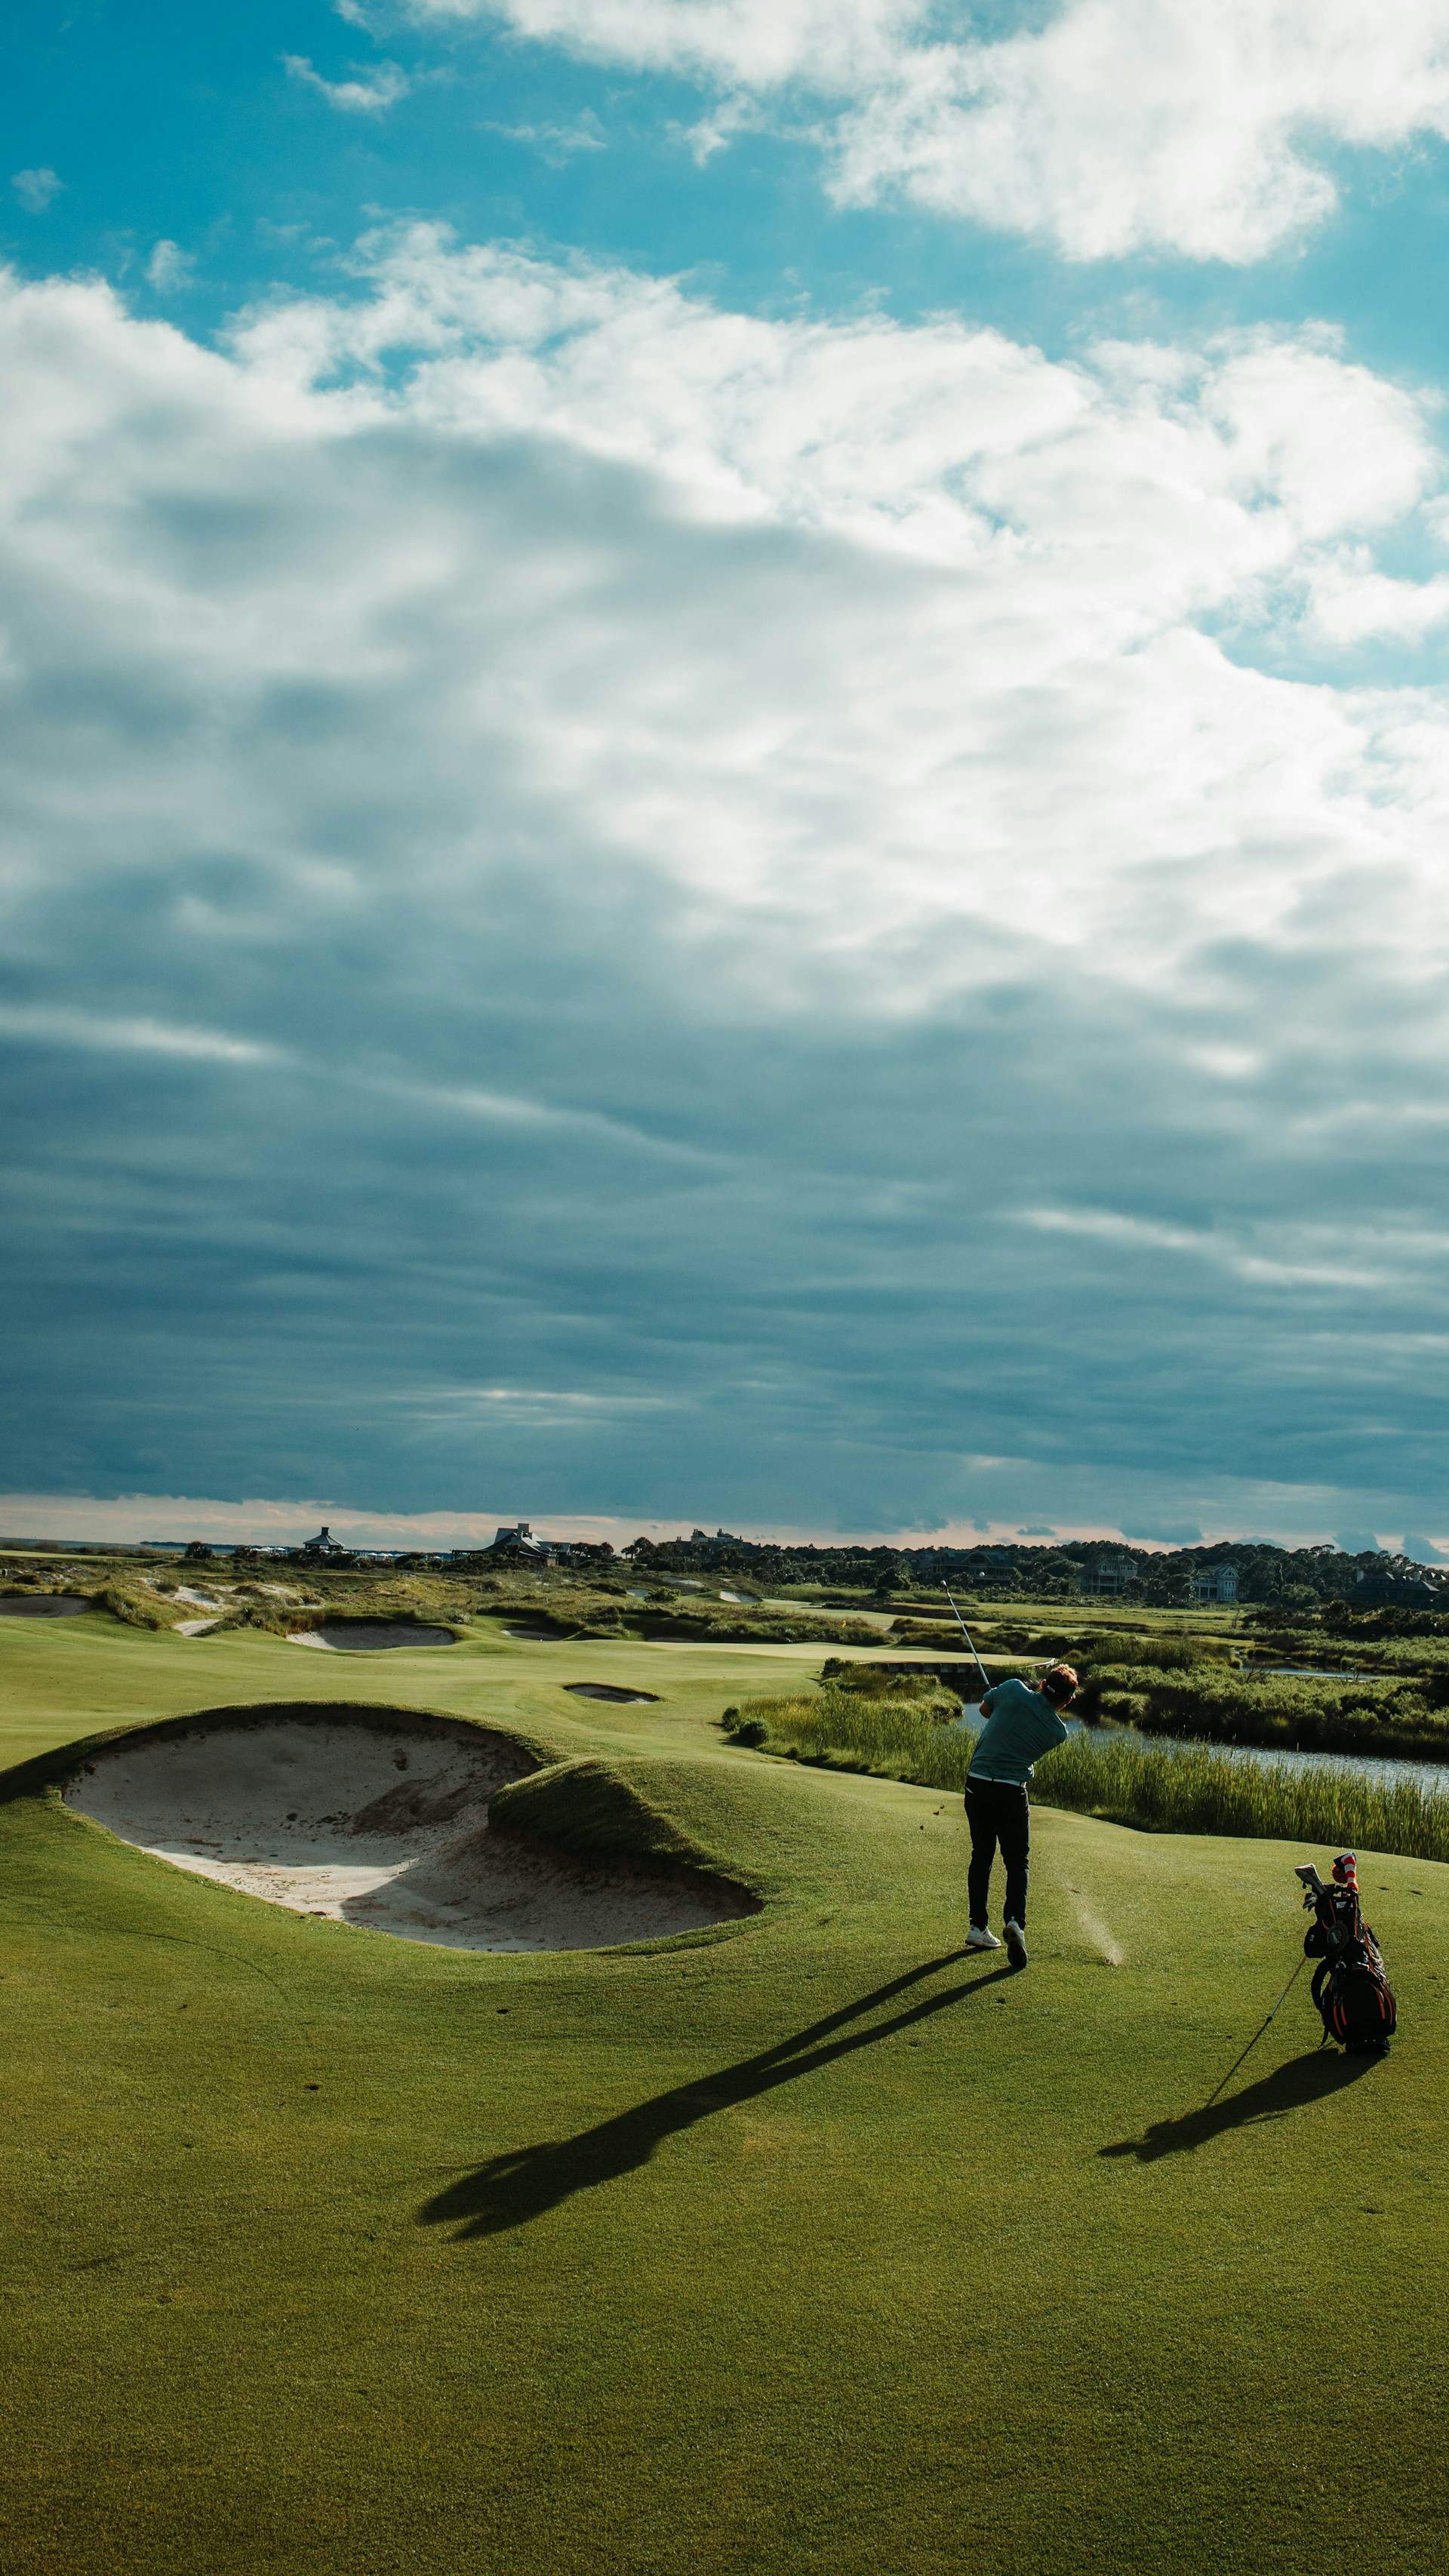 Golf: beneficios físicos, mentales y sociales